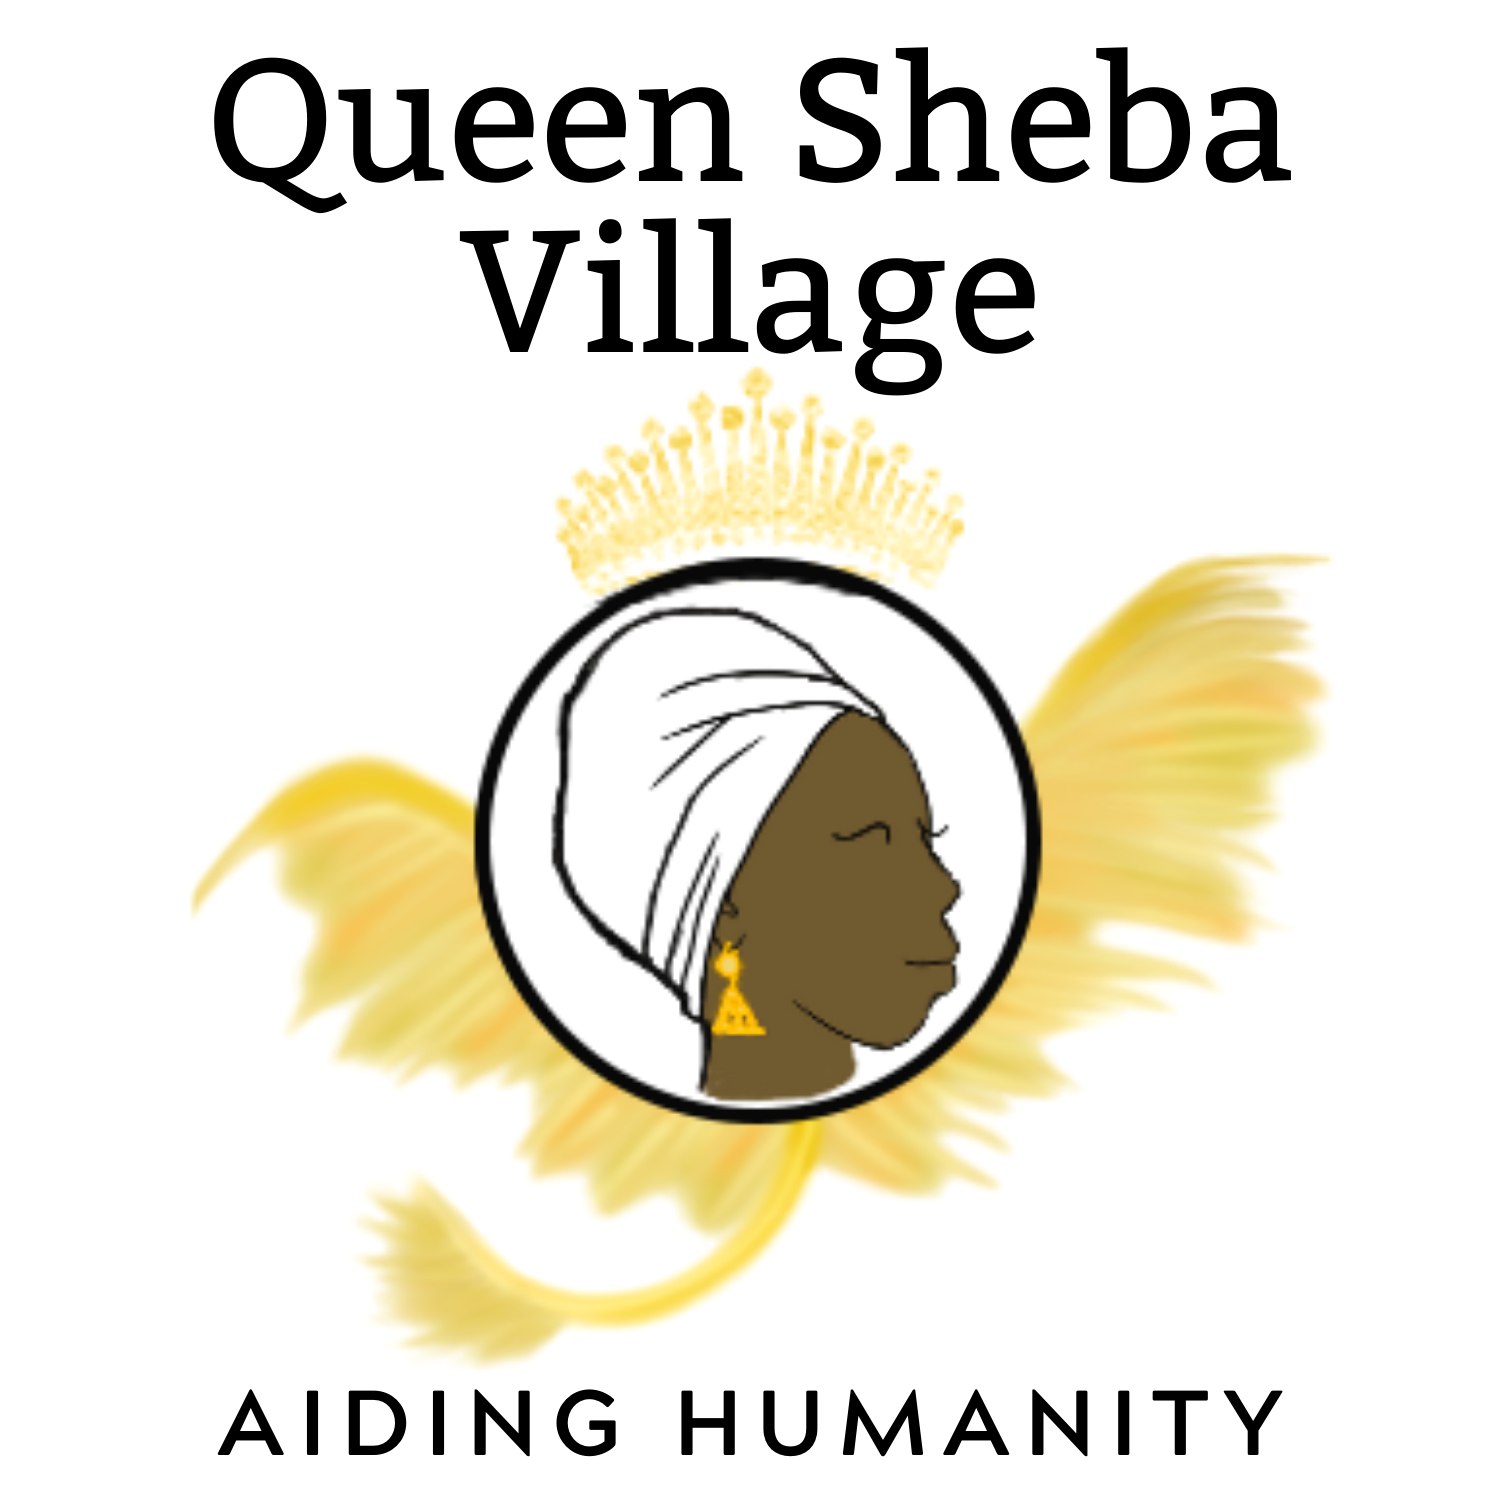 Queen Sheba Village